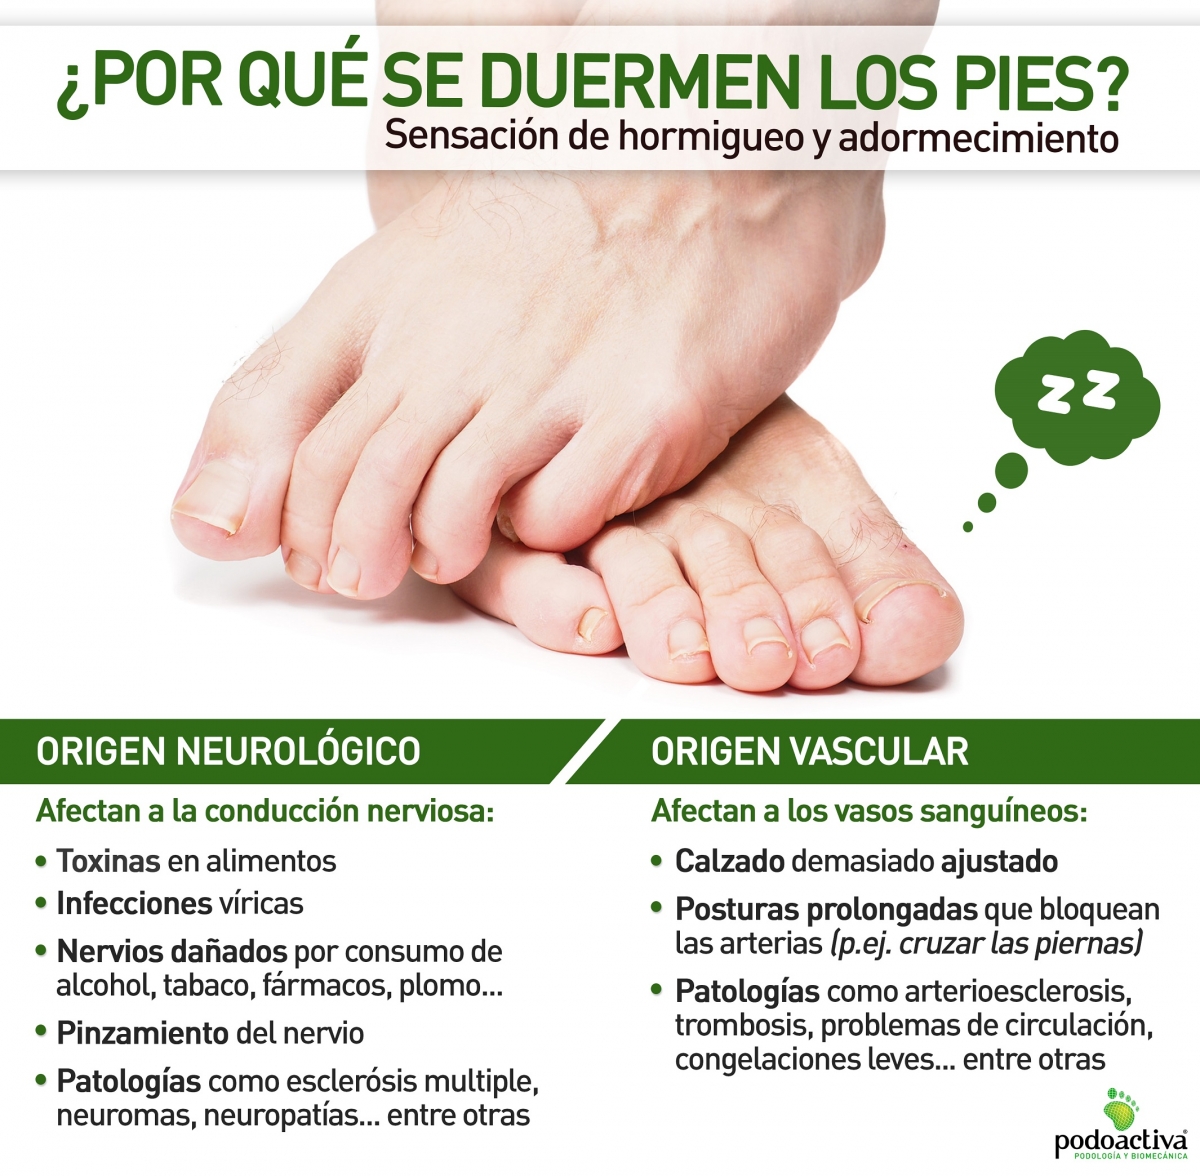 Infografía de Podoactiva con información sobre por qué se duermen los pies